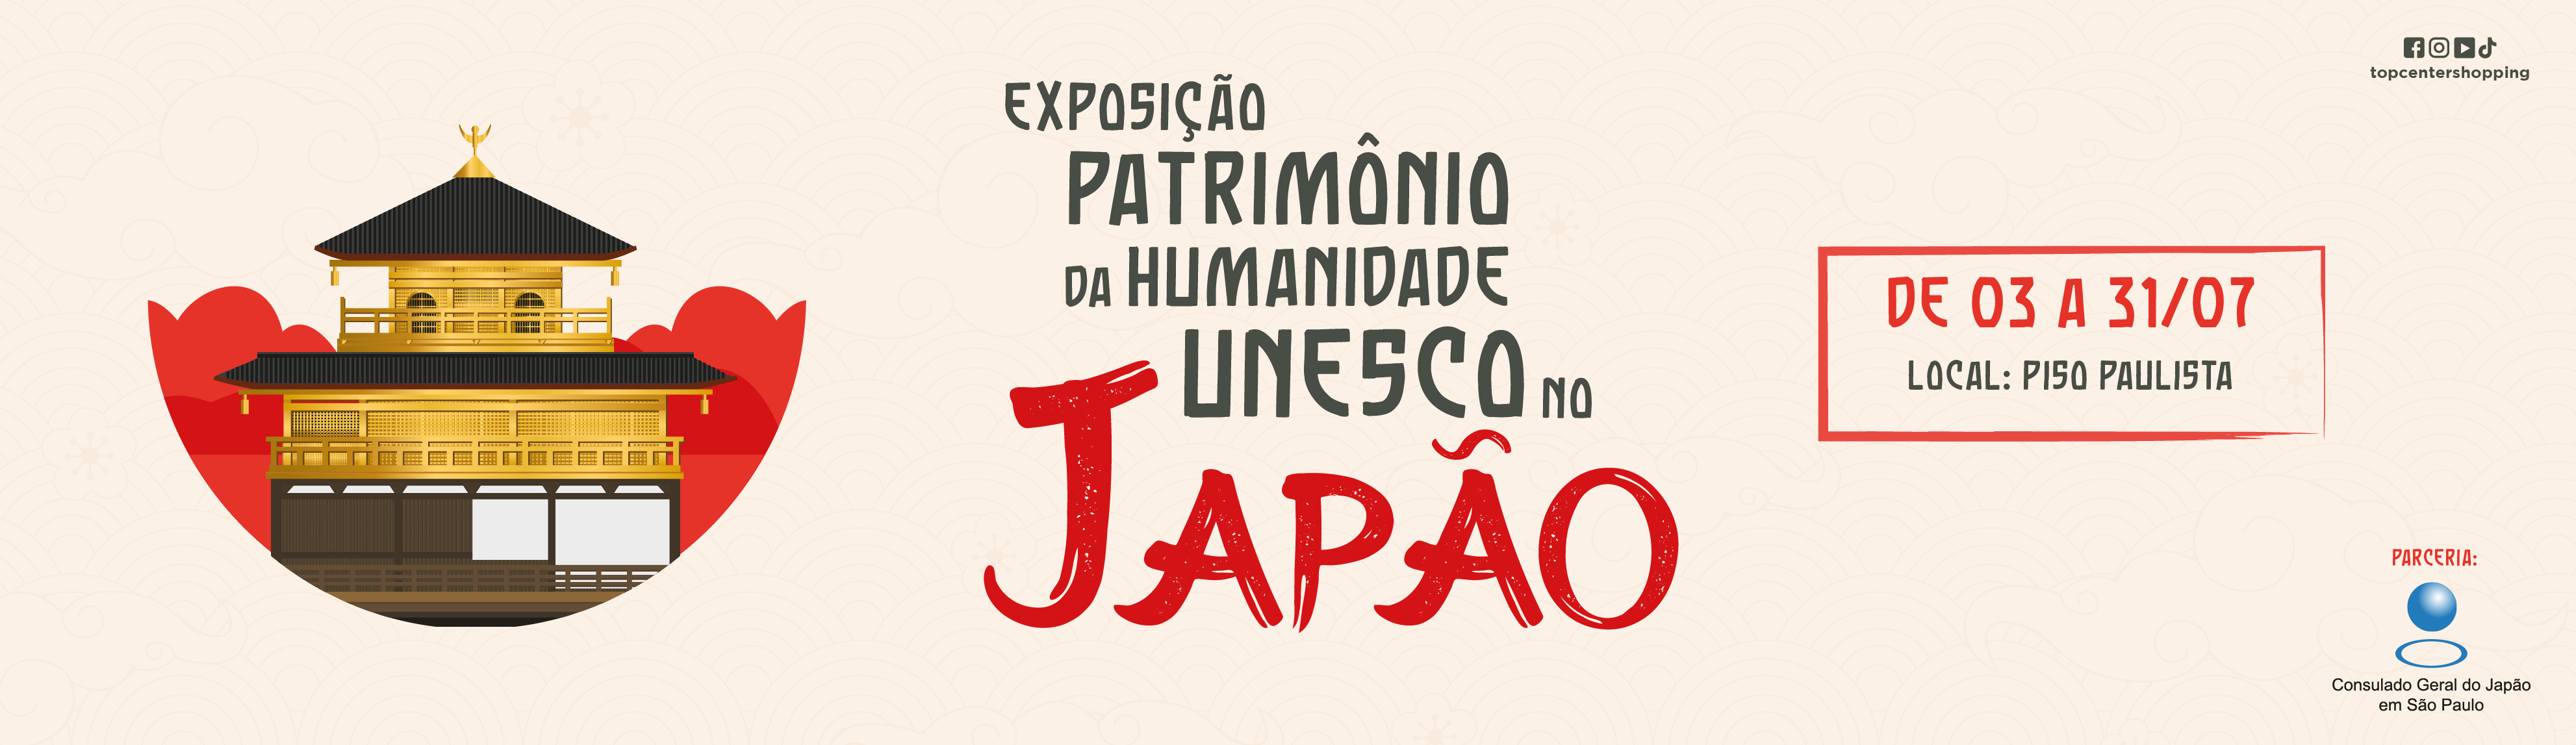 Exposição Patrimônio da Humanidade Unesco no Japão 2023